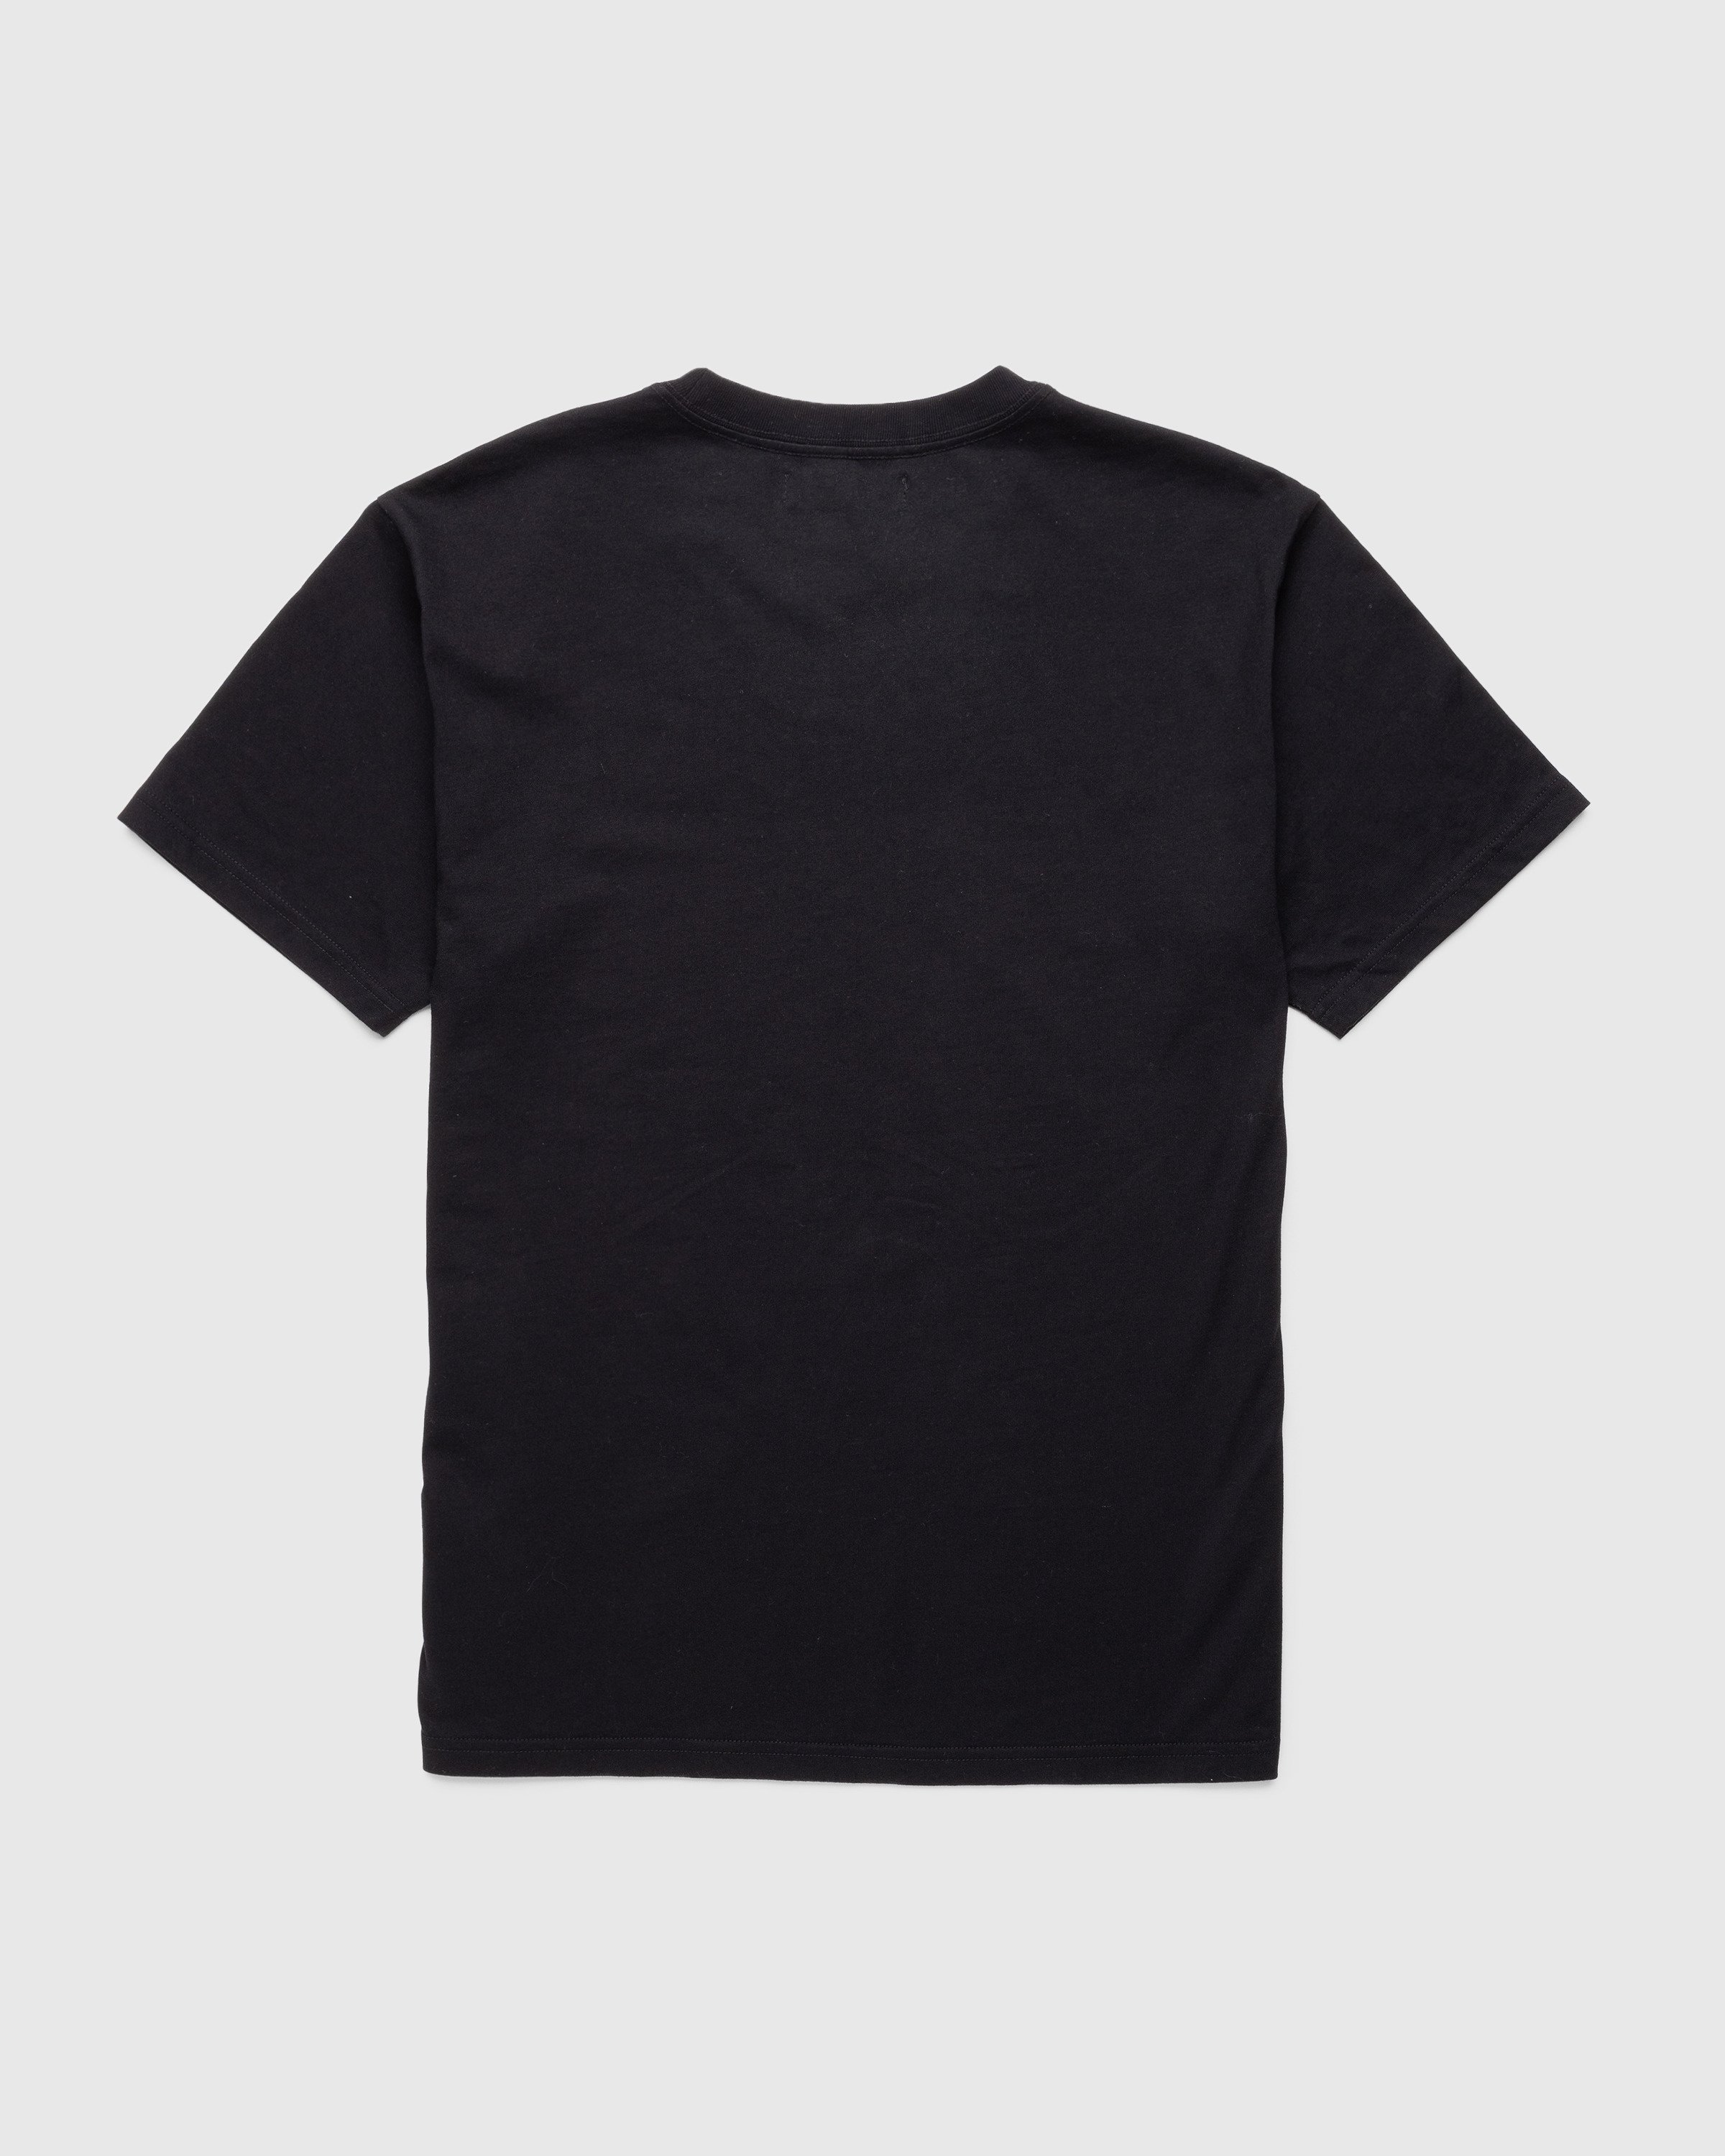 Theophilio x Highsnobiety - Black T-Shirt - Clothing - Black - Image 2